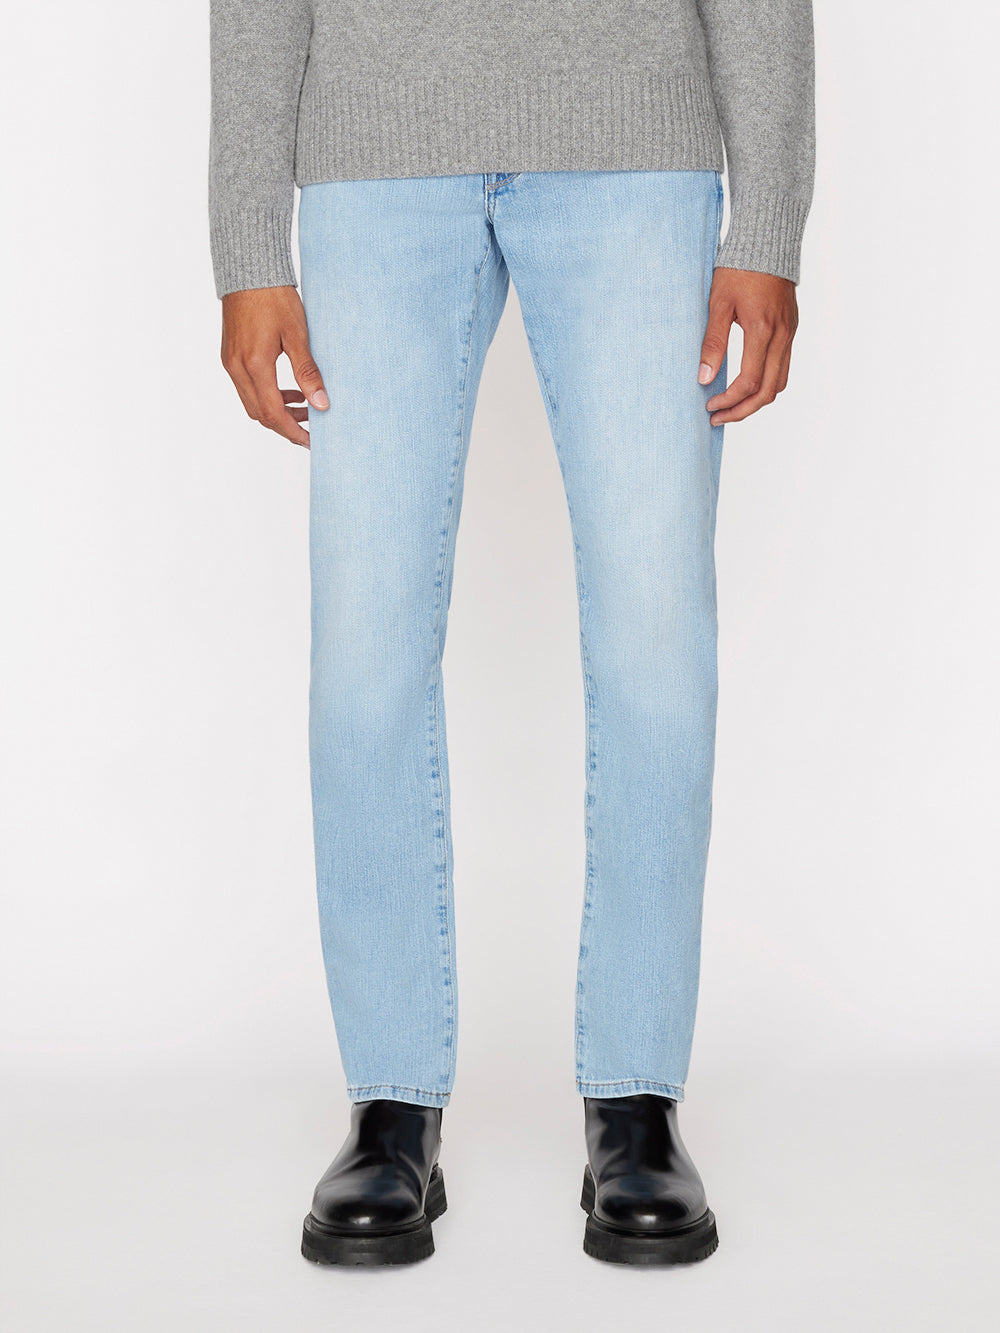 FRAME Denim lhomme Slim Jeans for Men Mens Clothing Jeans Slim jeans 